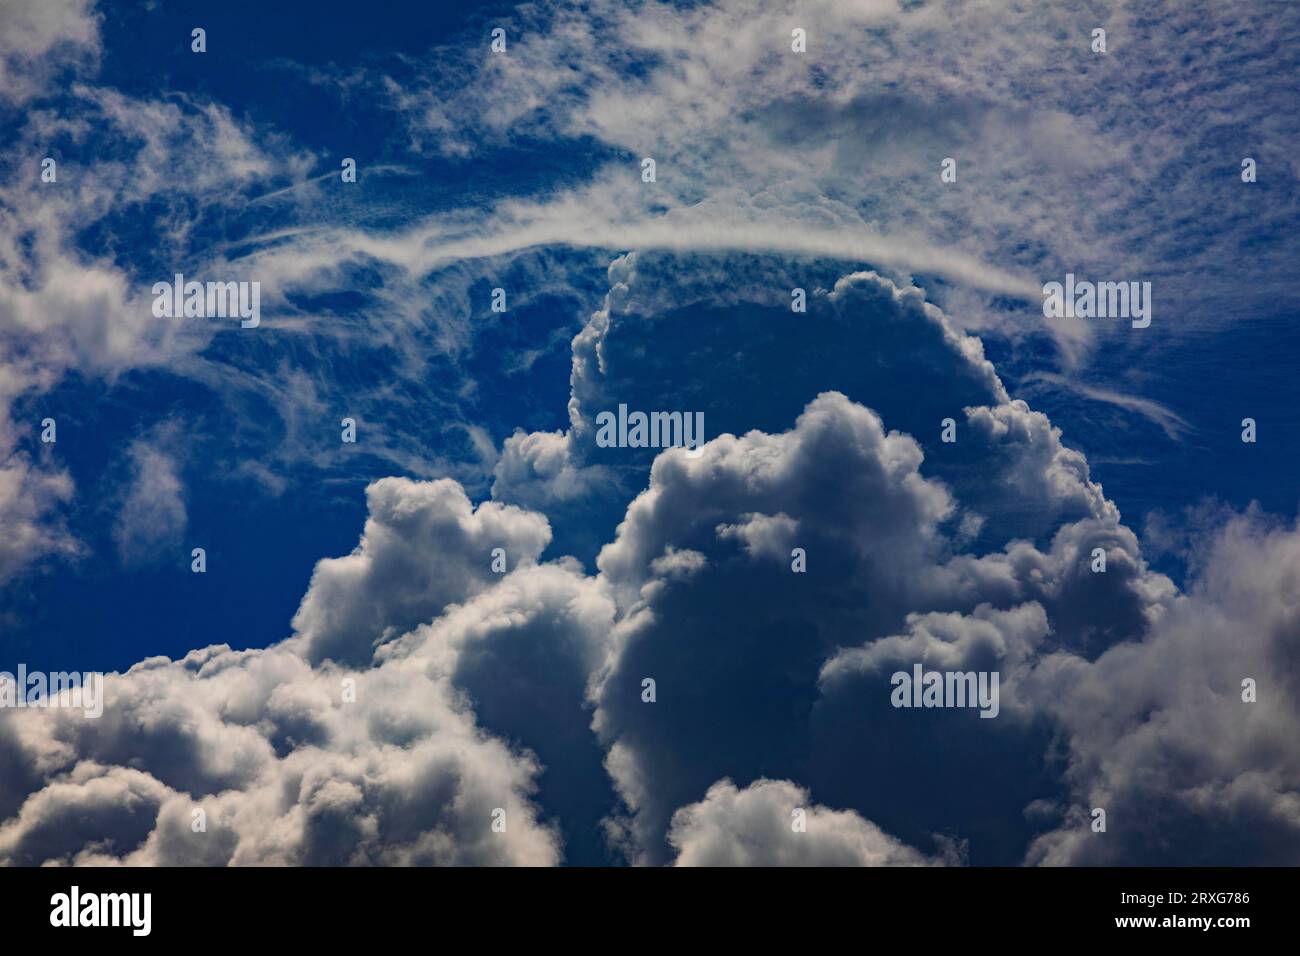 Suggestivo paesaggio nuvoloso con nuvole (cumulus), tuoni, nuvole di pioggia, Austria Foto Stock